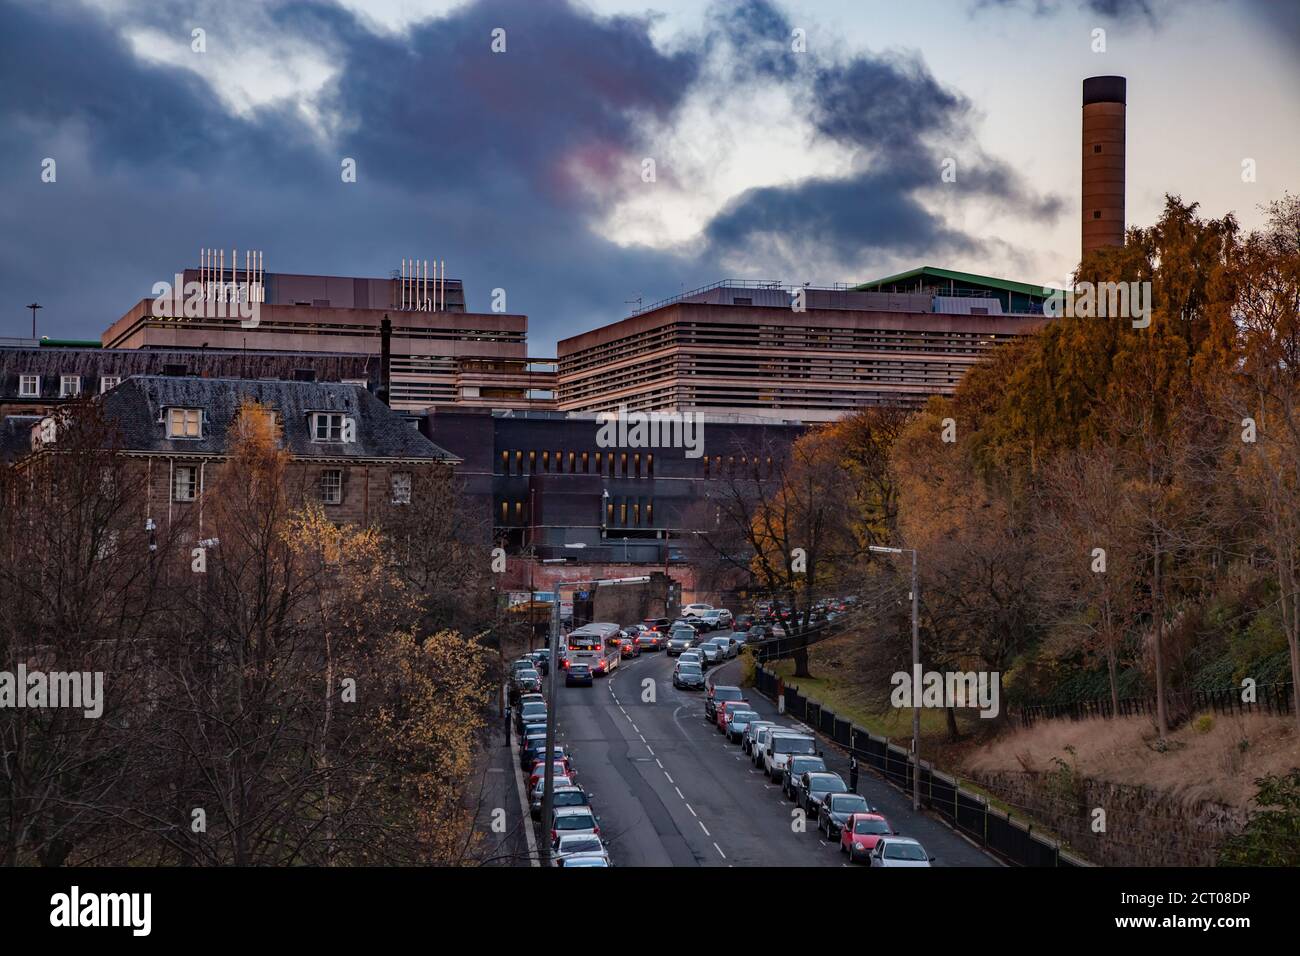 Glasgow / Écosse - 13 novembre 2013 : service de l'hôpital de Glasgow en automne et au coucher du soleil. Feuilles d'arbre jaunes. Ciel bleu avec coucher de soleil Banque D'Images